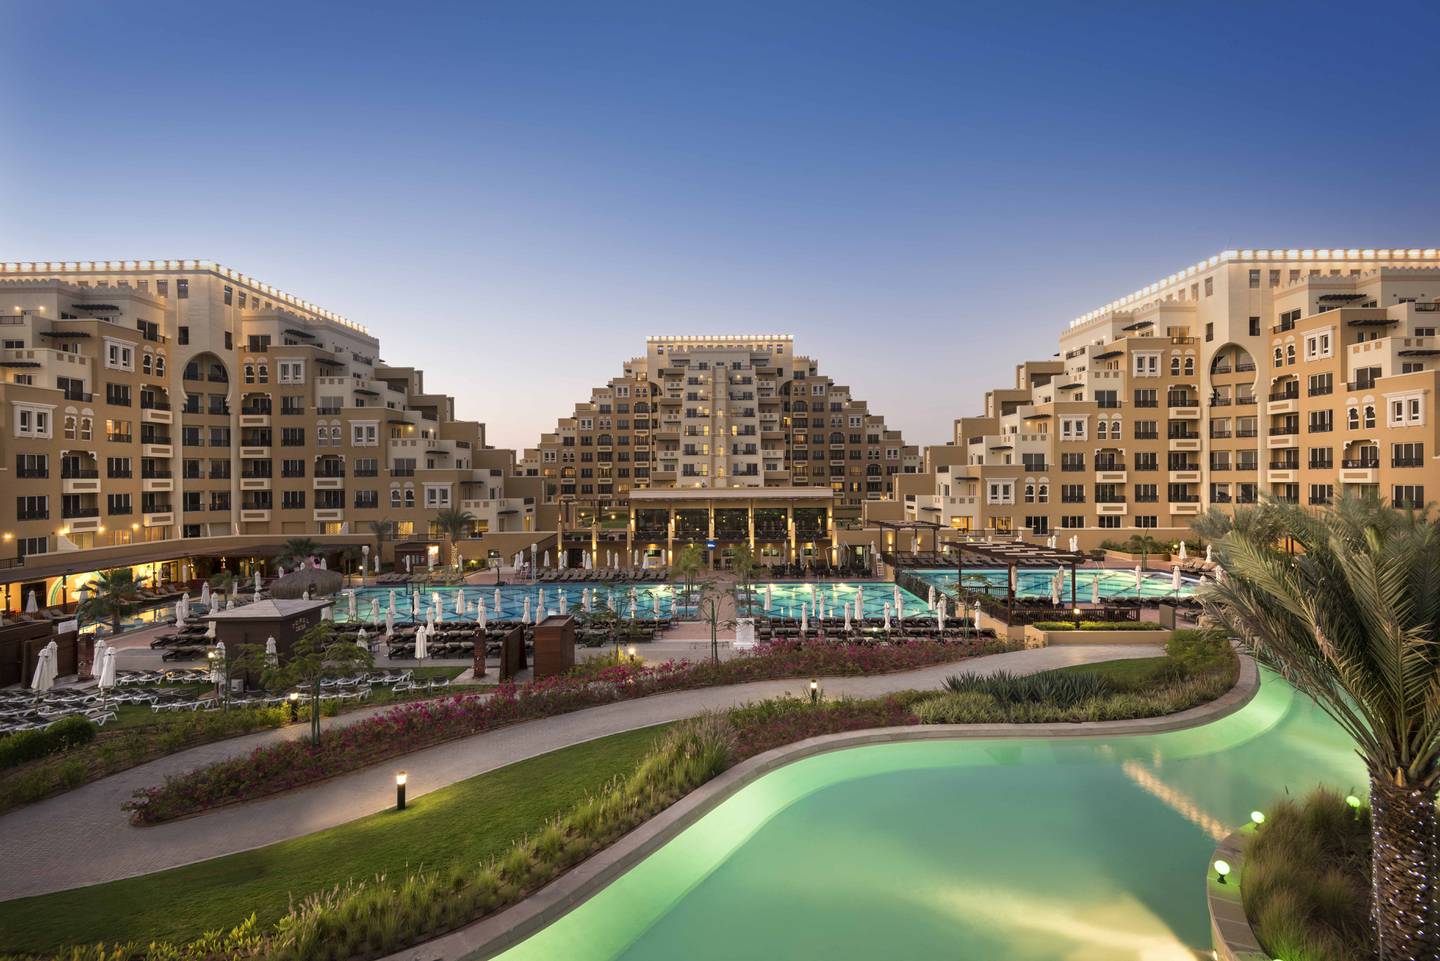 Rixos Bab Al Bahr is Ras Al Khaimah’s only all-inclusive resort. Courtesy Rixos Bab Al Bahr